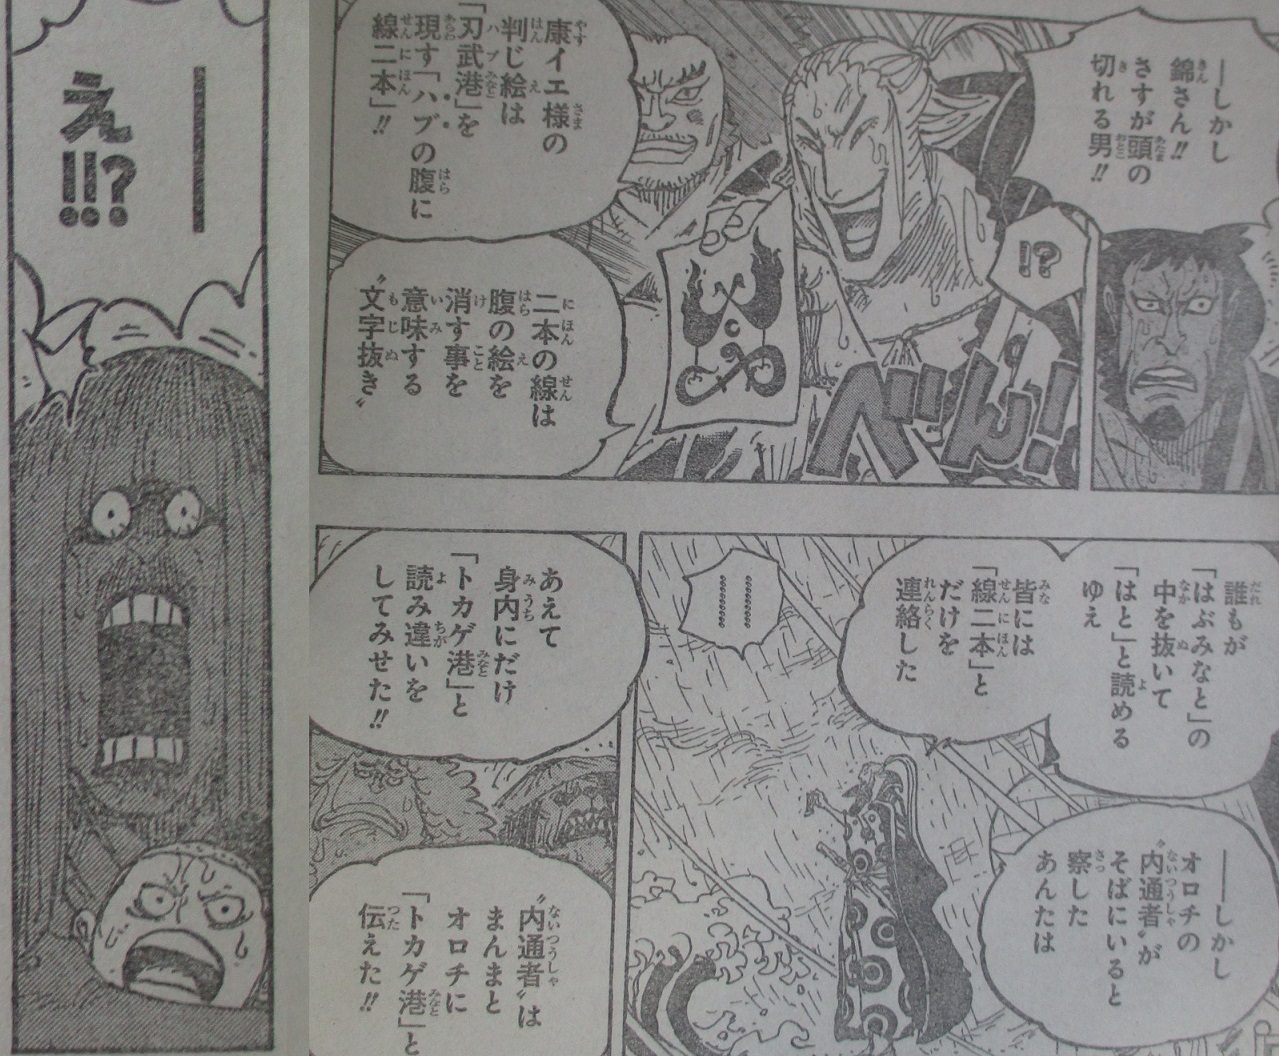 Spoiler One Piece Chapter 975 Spoiler Summaries And Images Worstgen